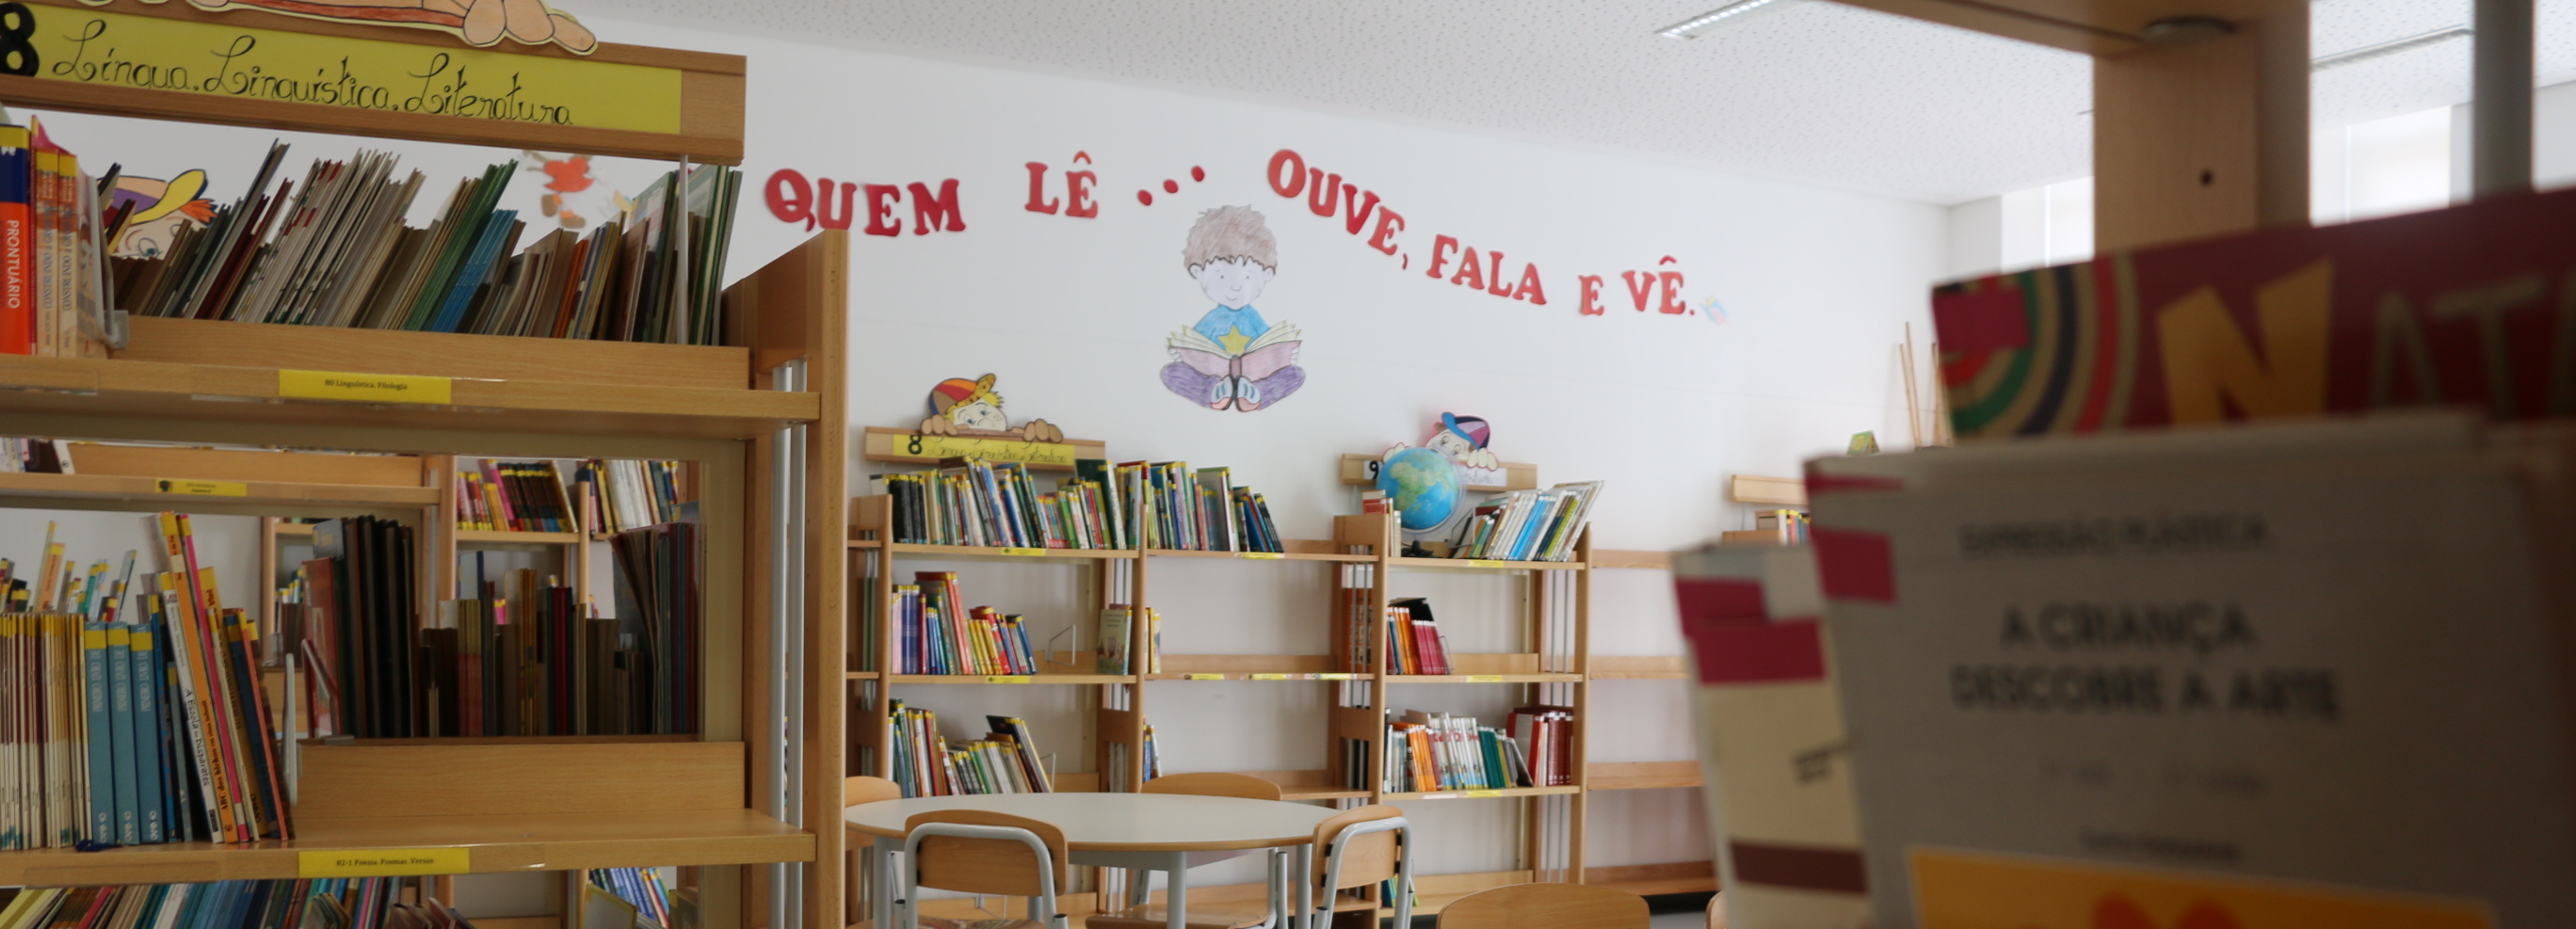 Biblioteca do Centro Escolar da Várzea integra Rede de Bibliotecas Escolares